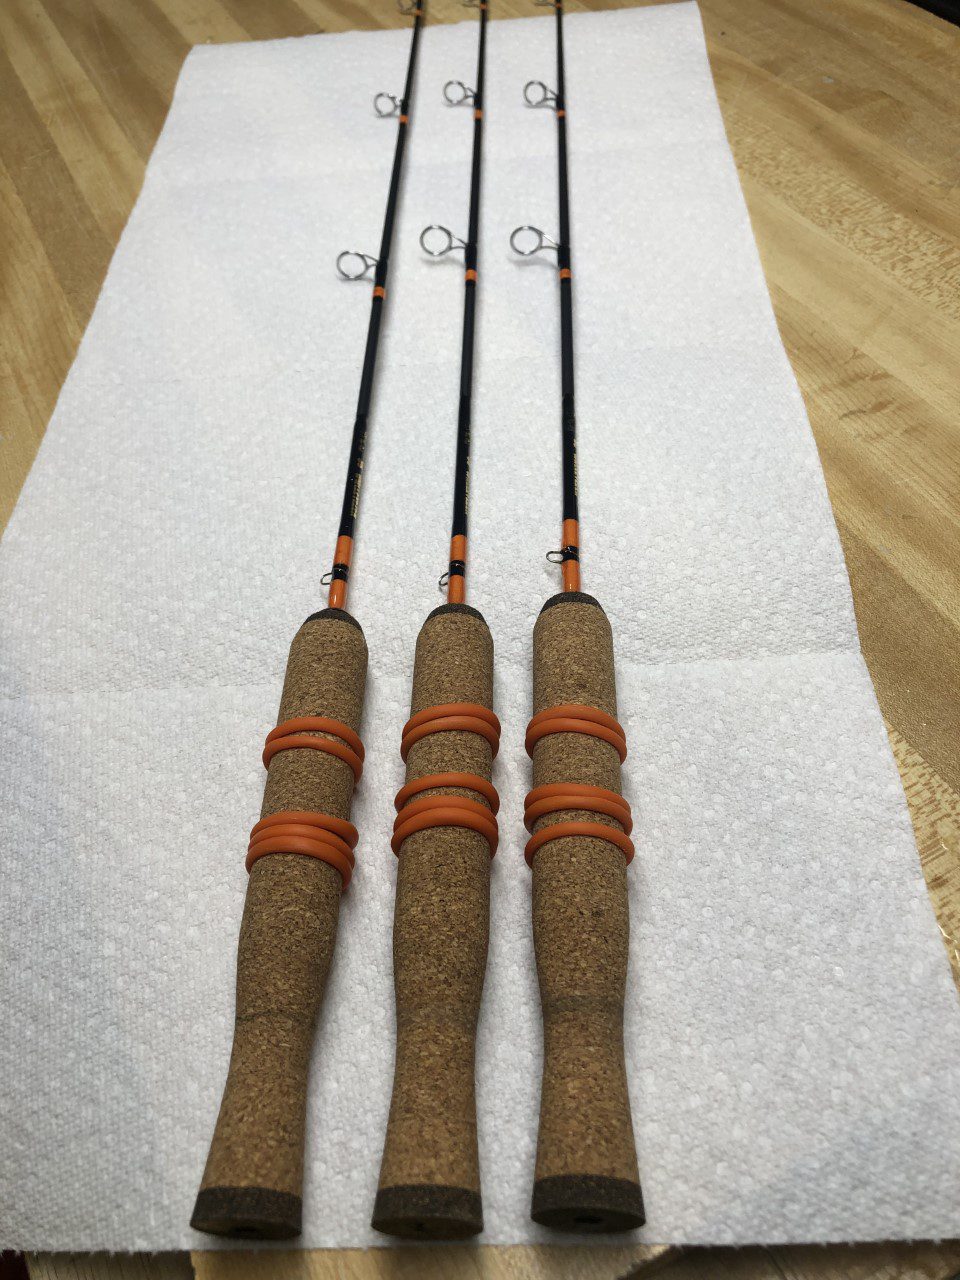 Walleye Trolling Rods – Elk River Custom Rods